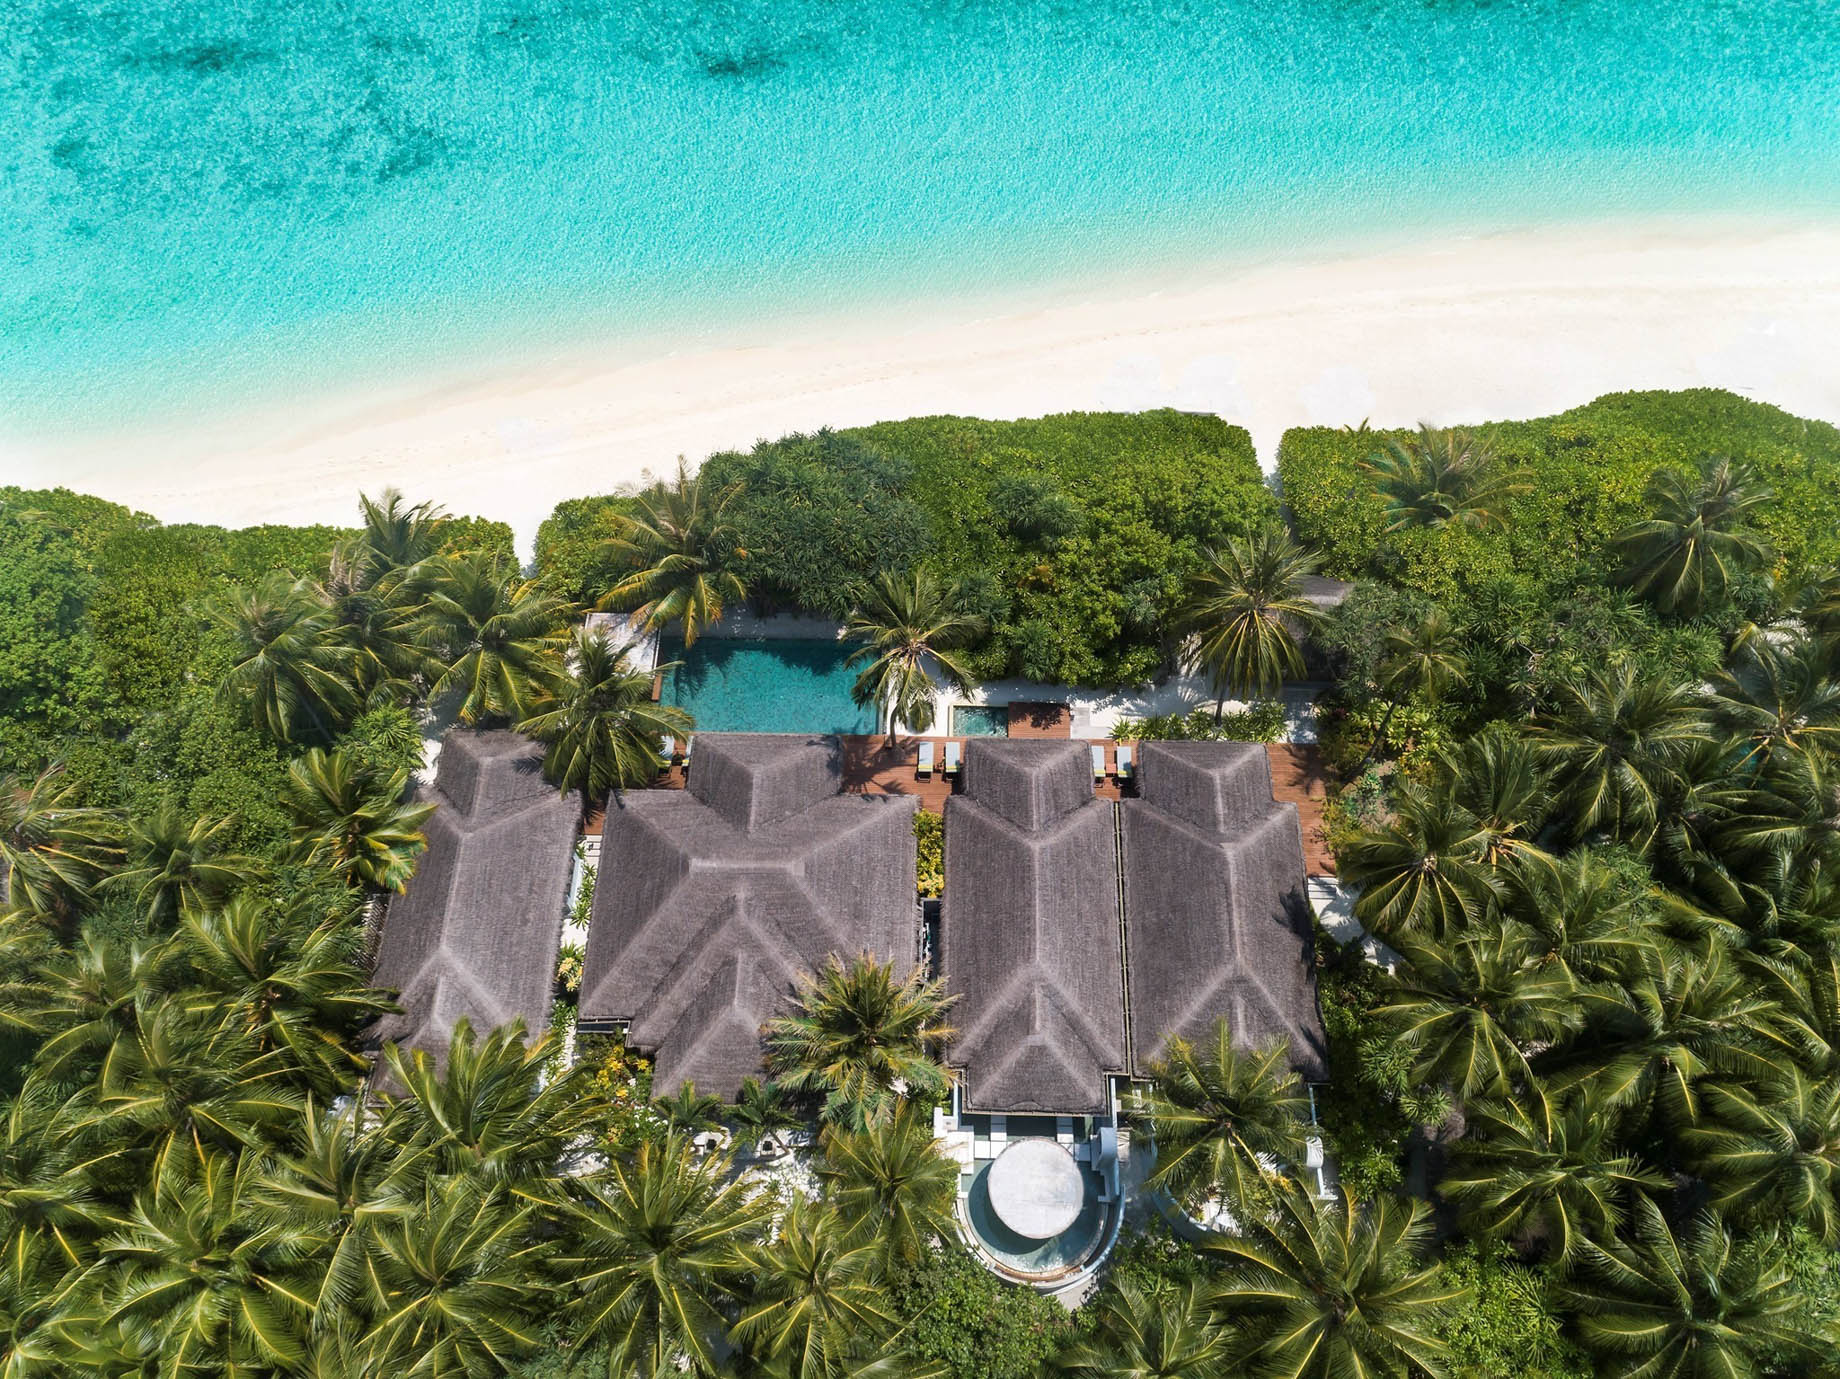 Anantara Kihavah Maldives Villas Resort - Baa Atoll, Maldives - Three Bedroom Beach Pool Residence Aerial View